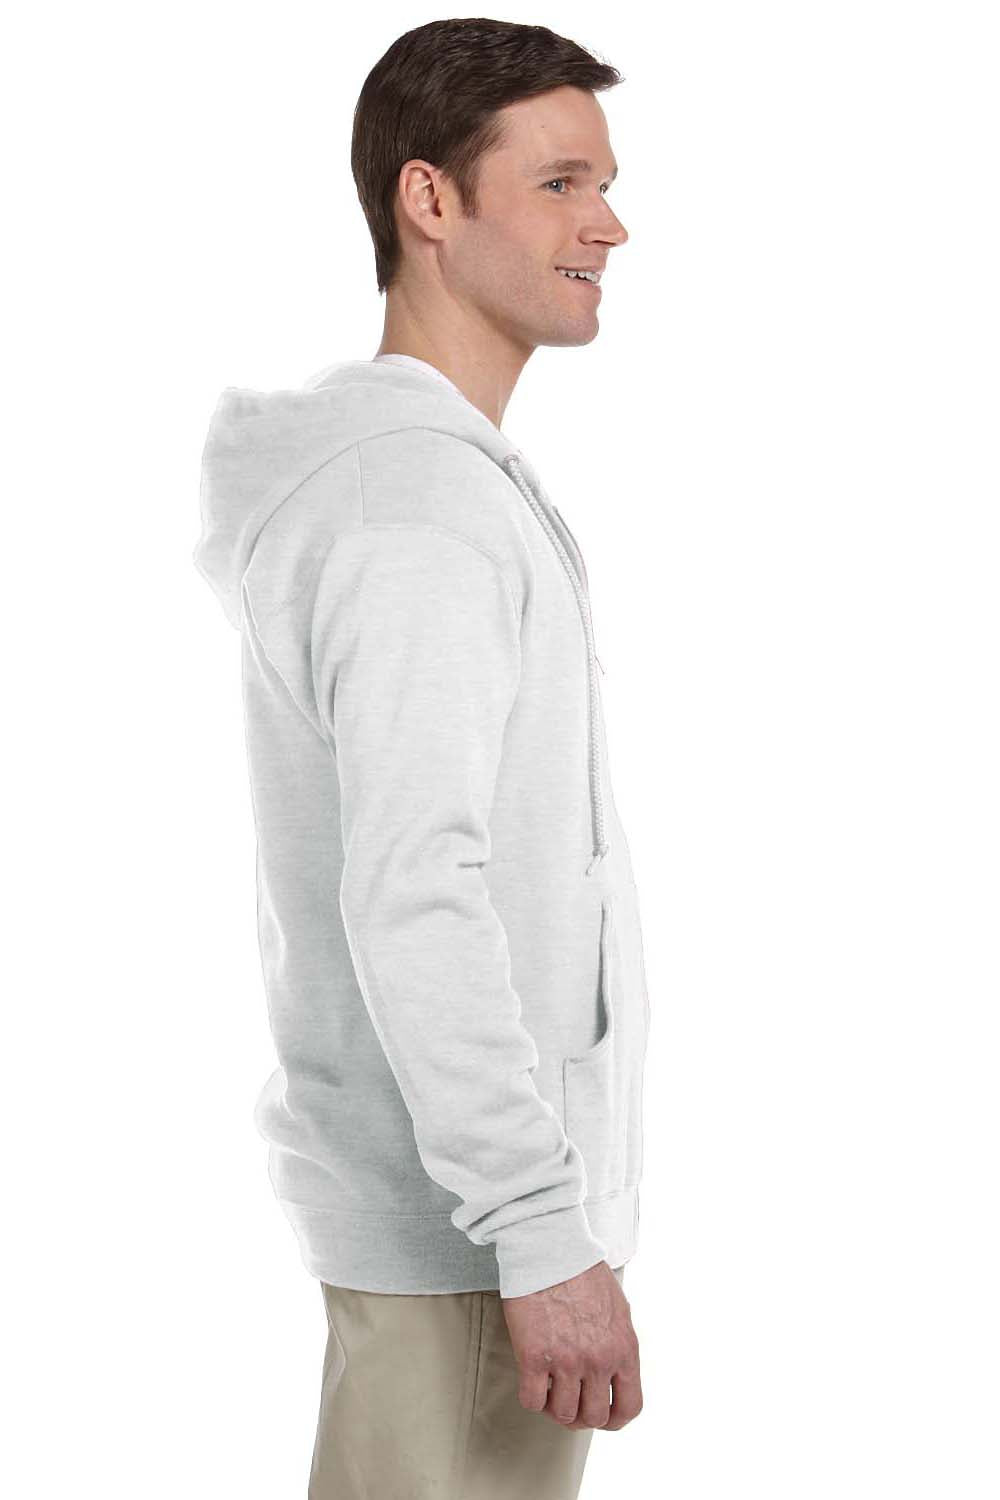 Jerzees 993 Mens NuBlend Fleece Full Zip Hooded Sweatshirt Hoodie Ash Grey Side